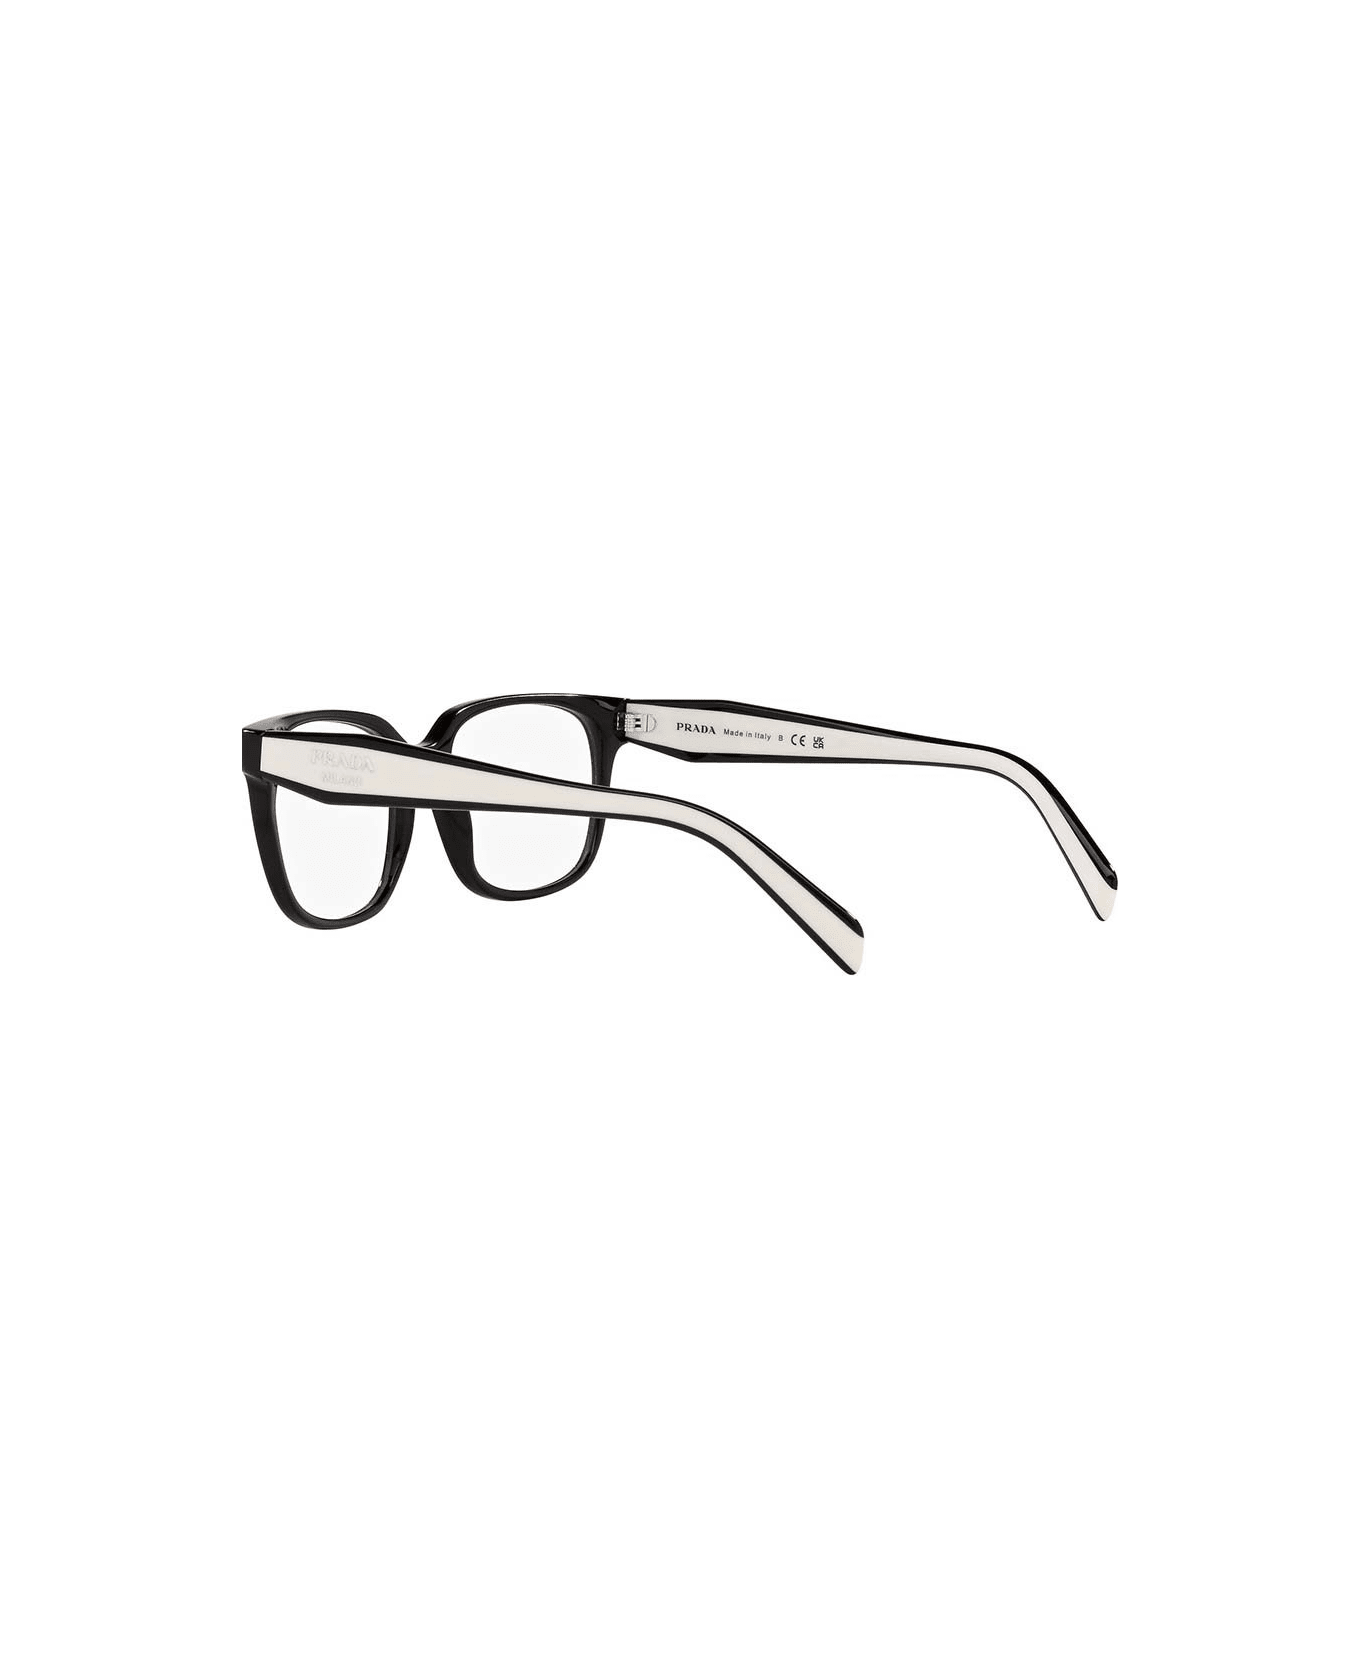 Prada Eyewear Glasses - 1AB1O1 アイウェア